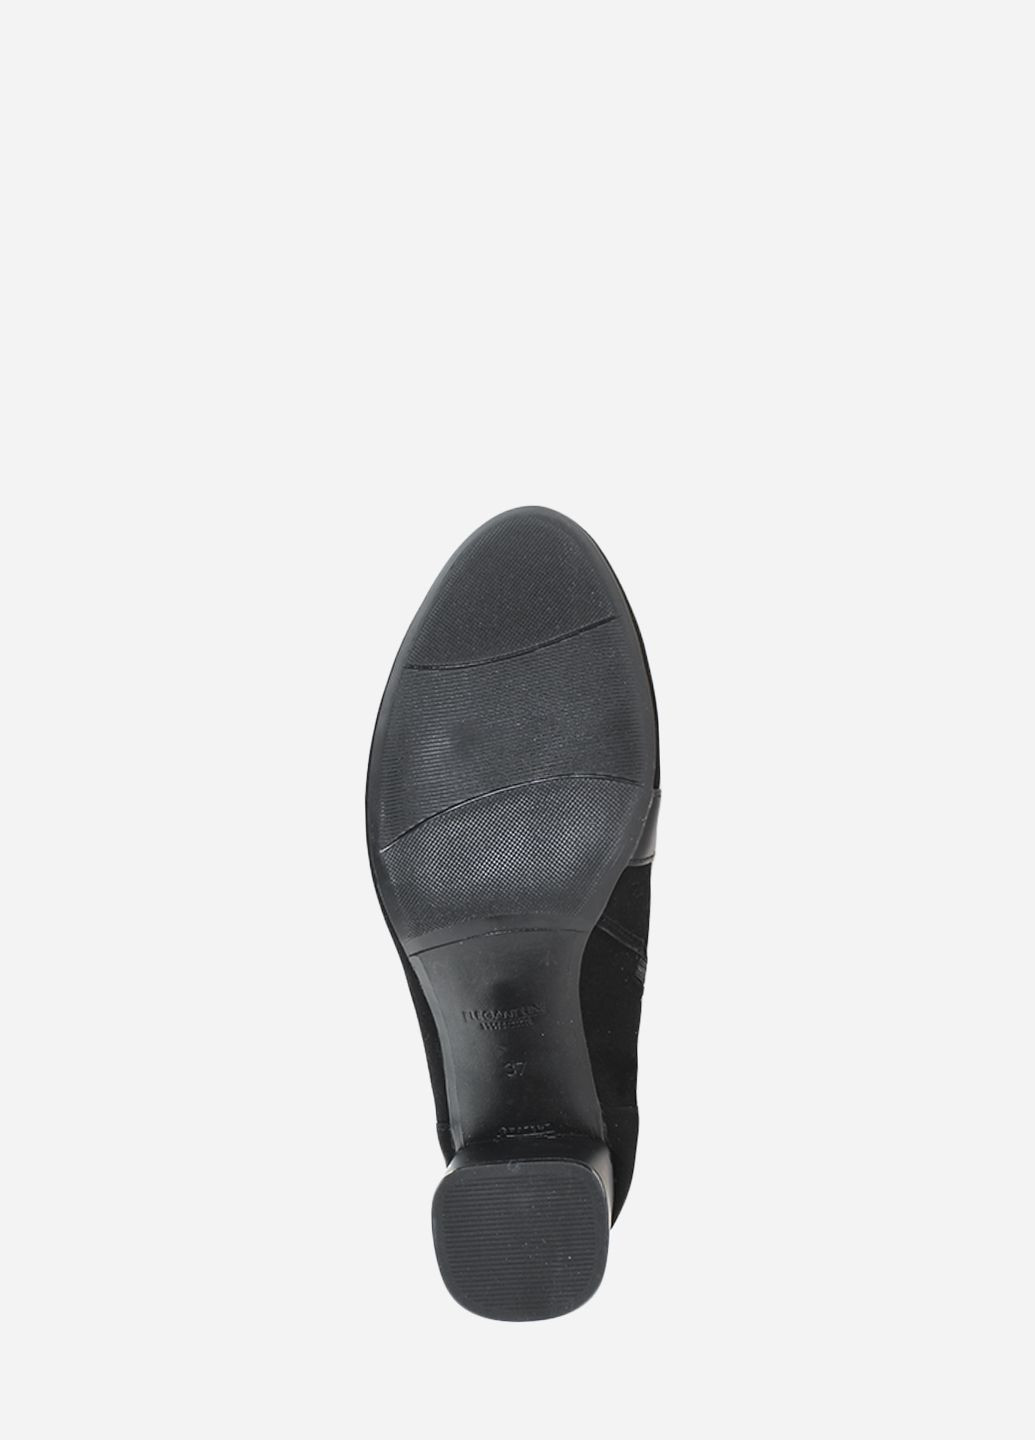 Осенние ботинки rk709-11 черный Kseniya из натуральной замши